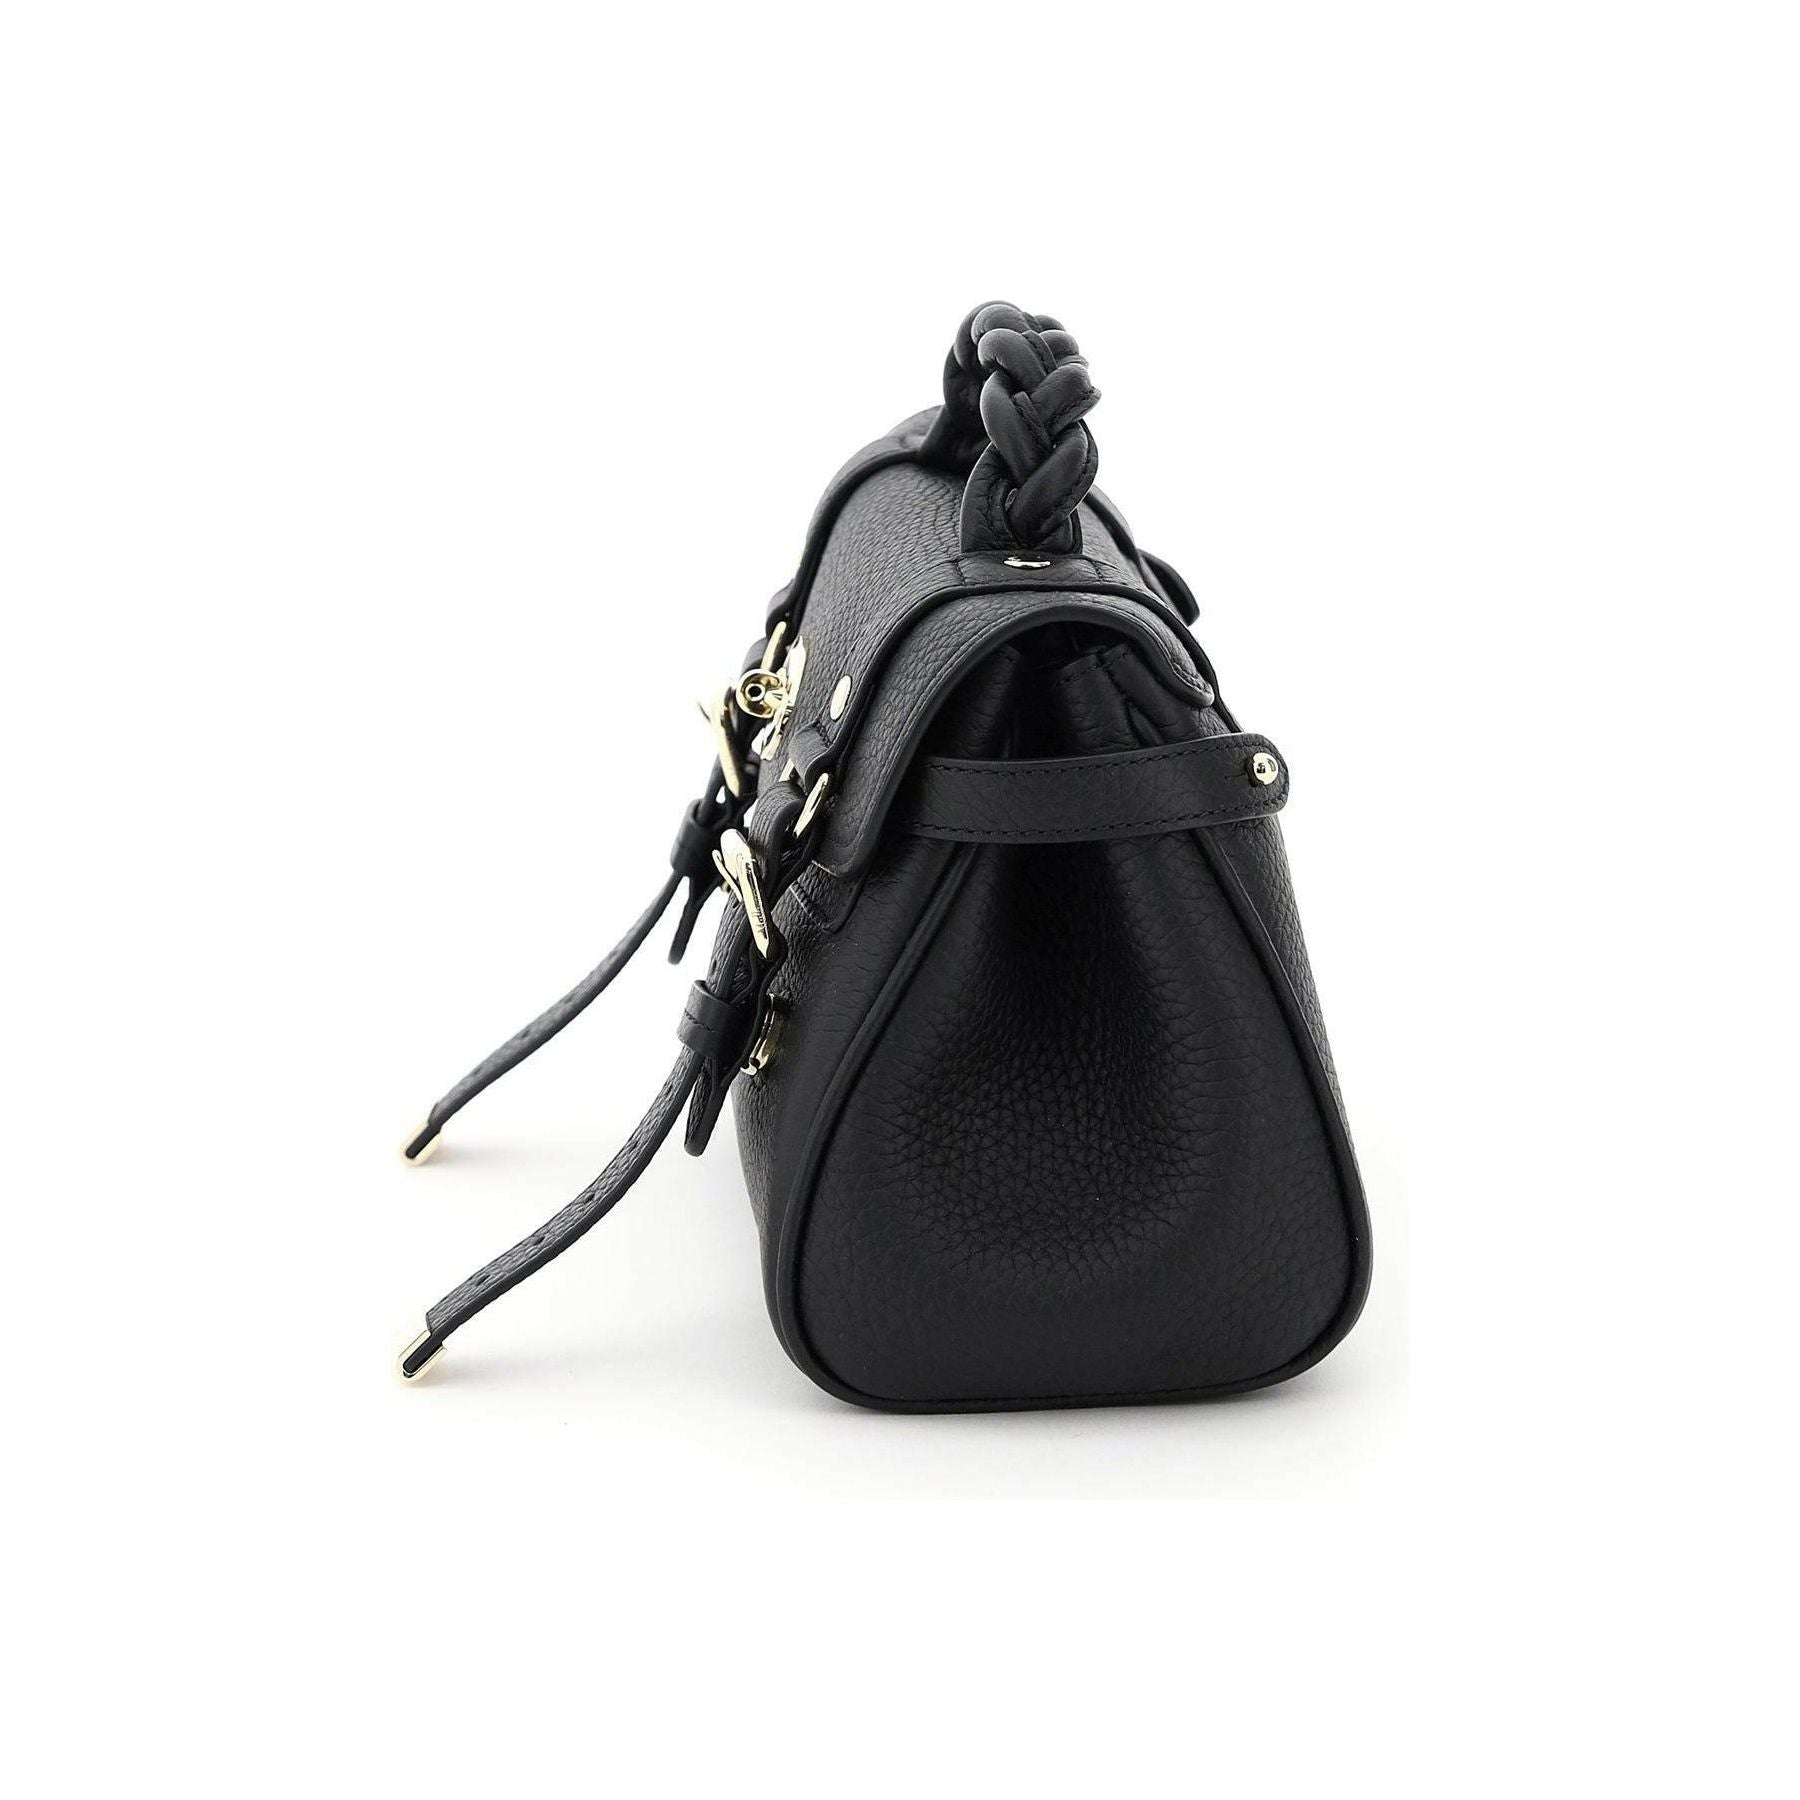 Black Alexa Leather Mini Bag MULBERRY JOHN JULIA.